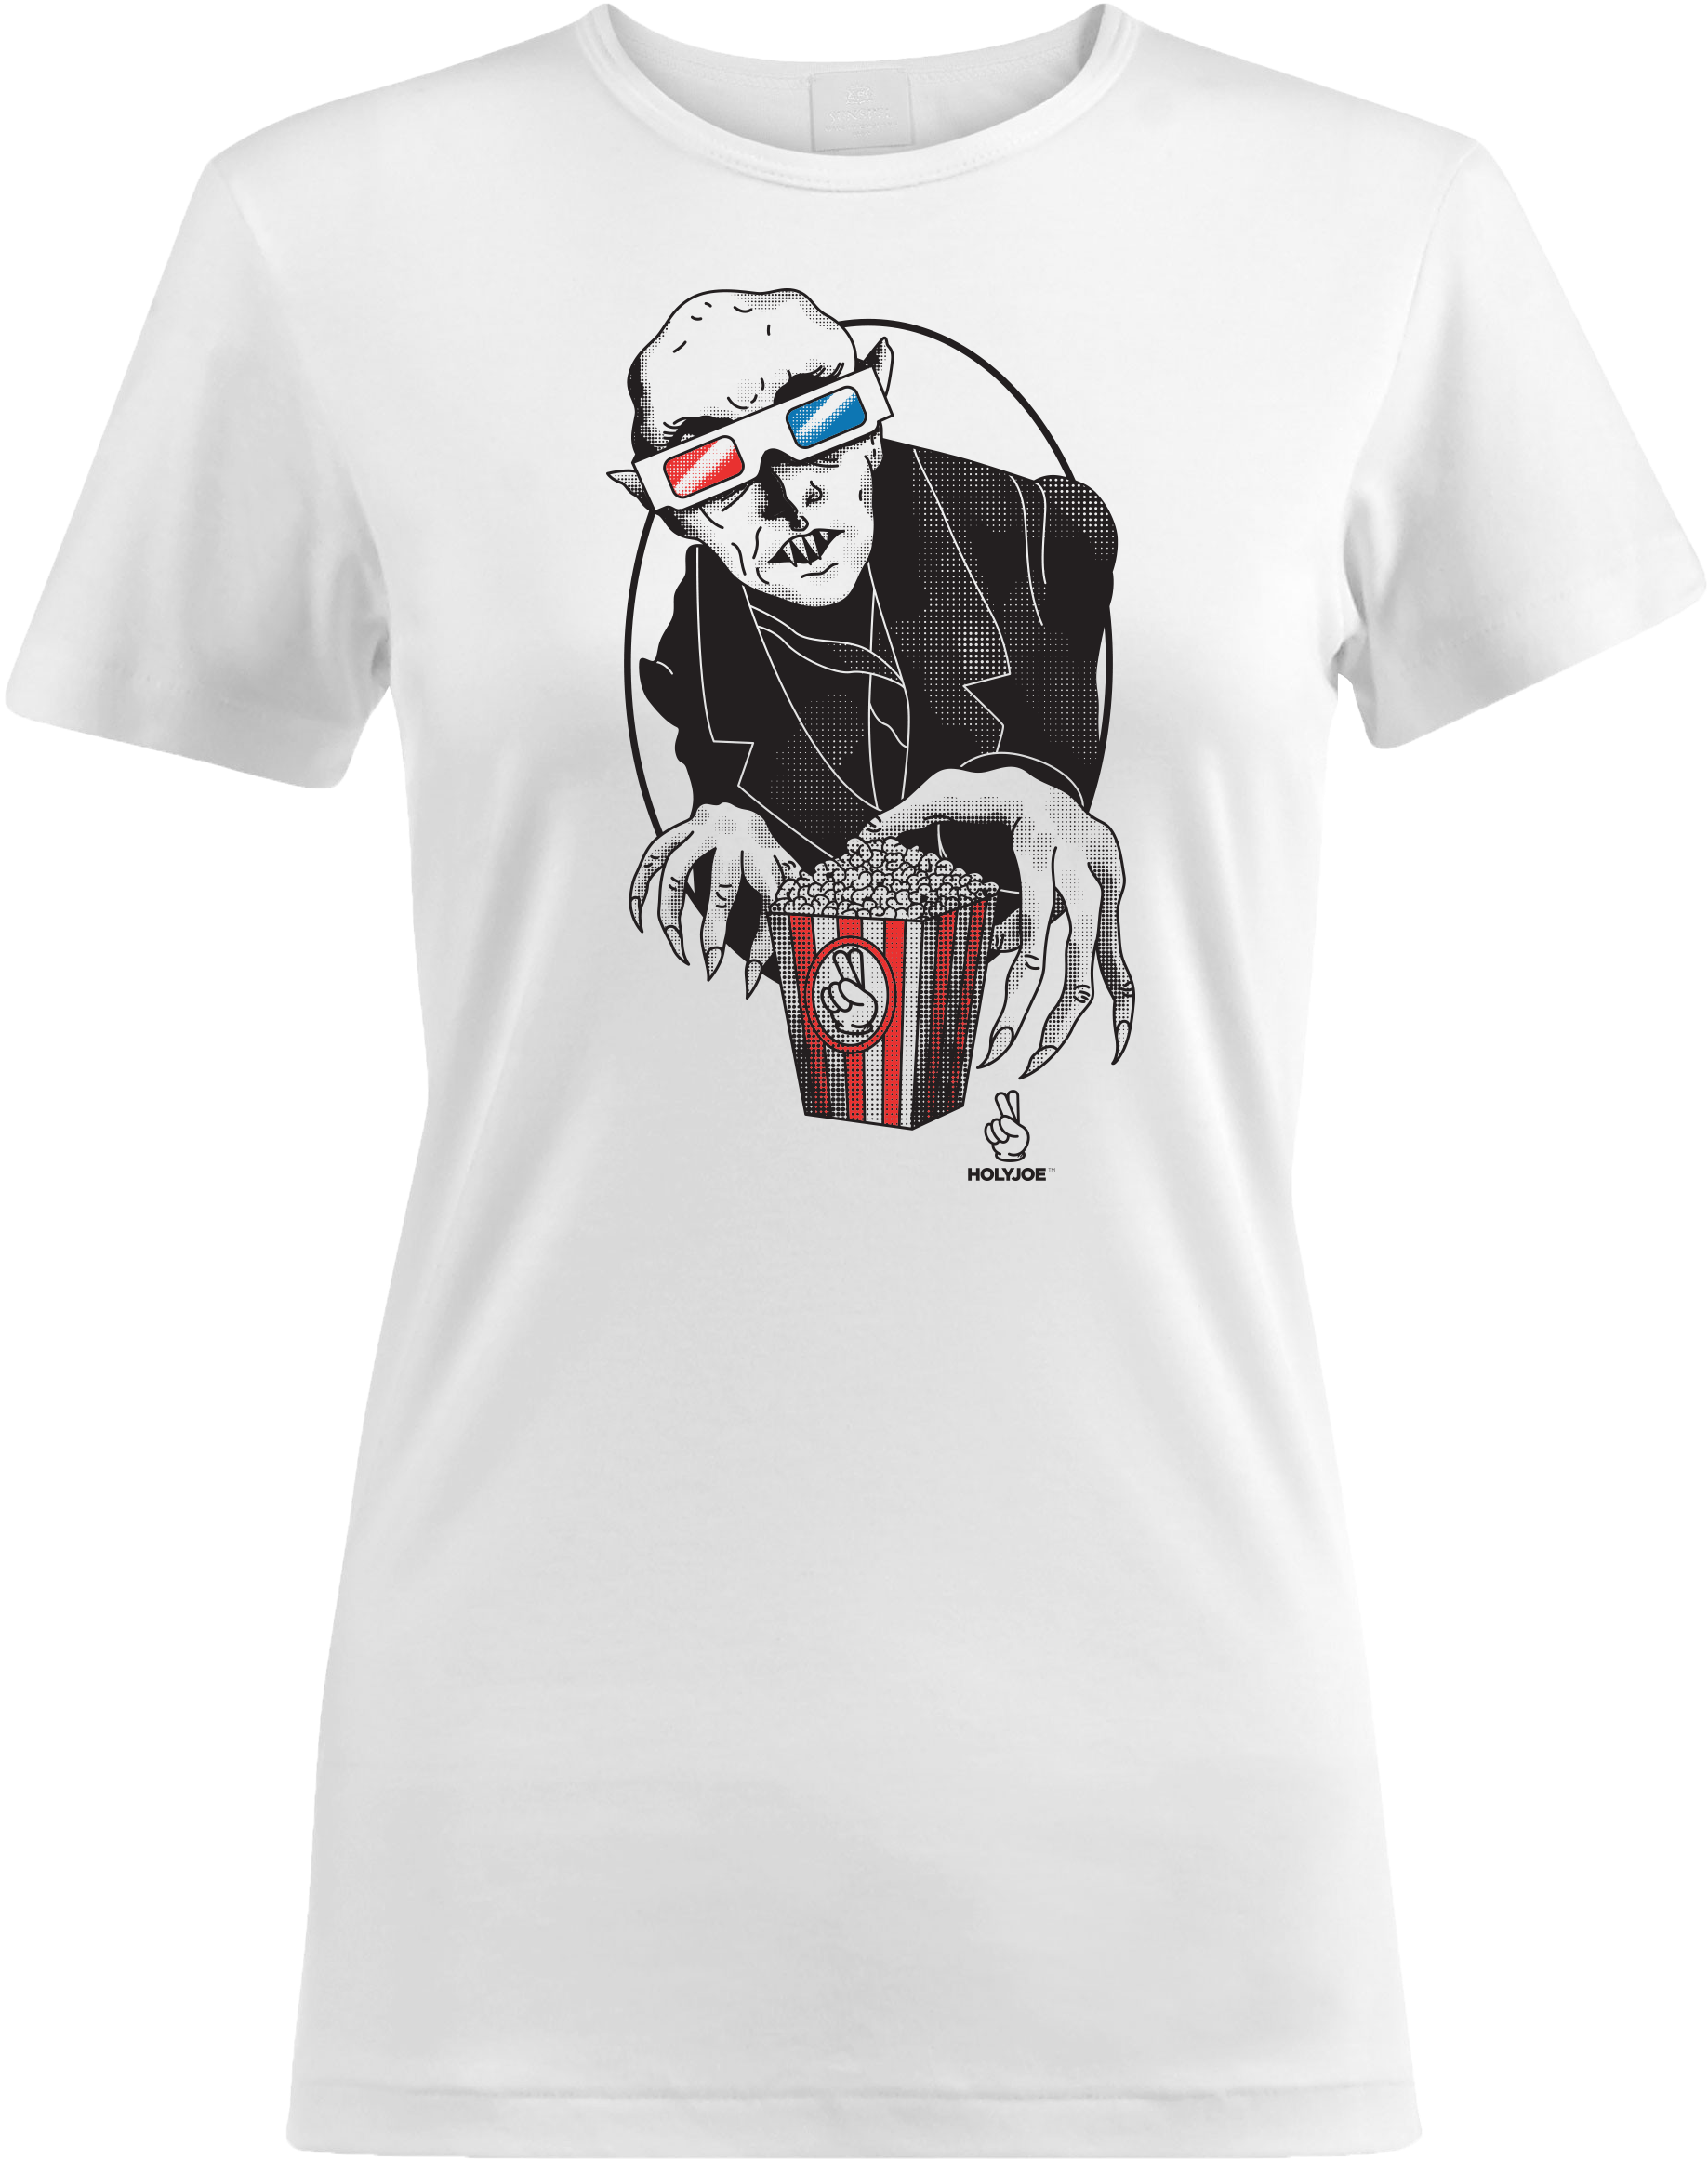 Playera Nosferatu 3d - T-shirt Clipart (2300x2415), Png Download